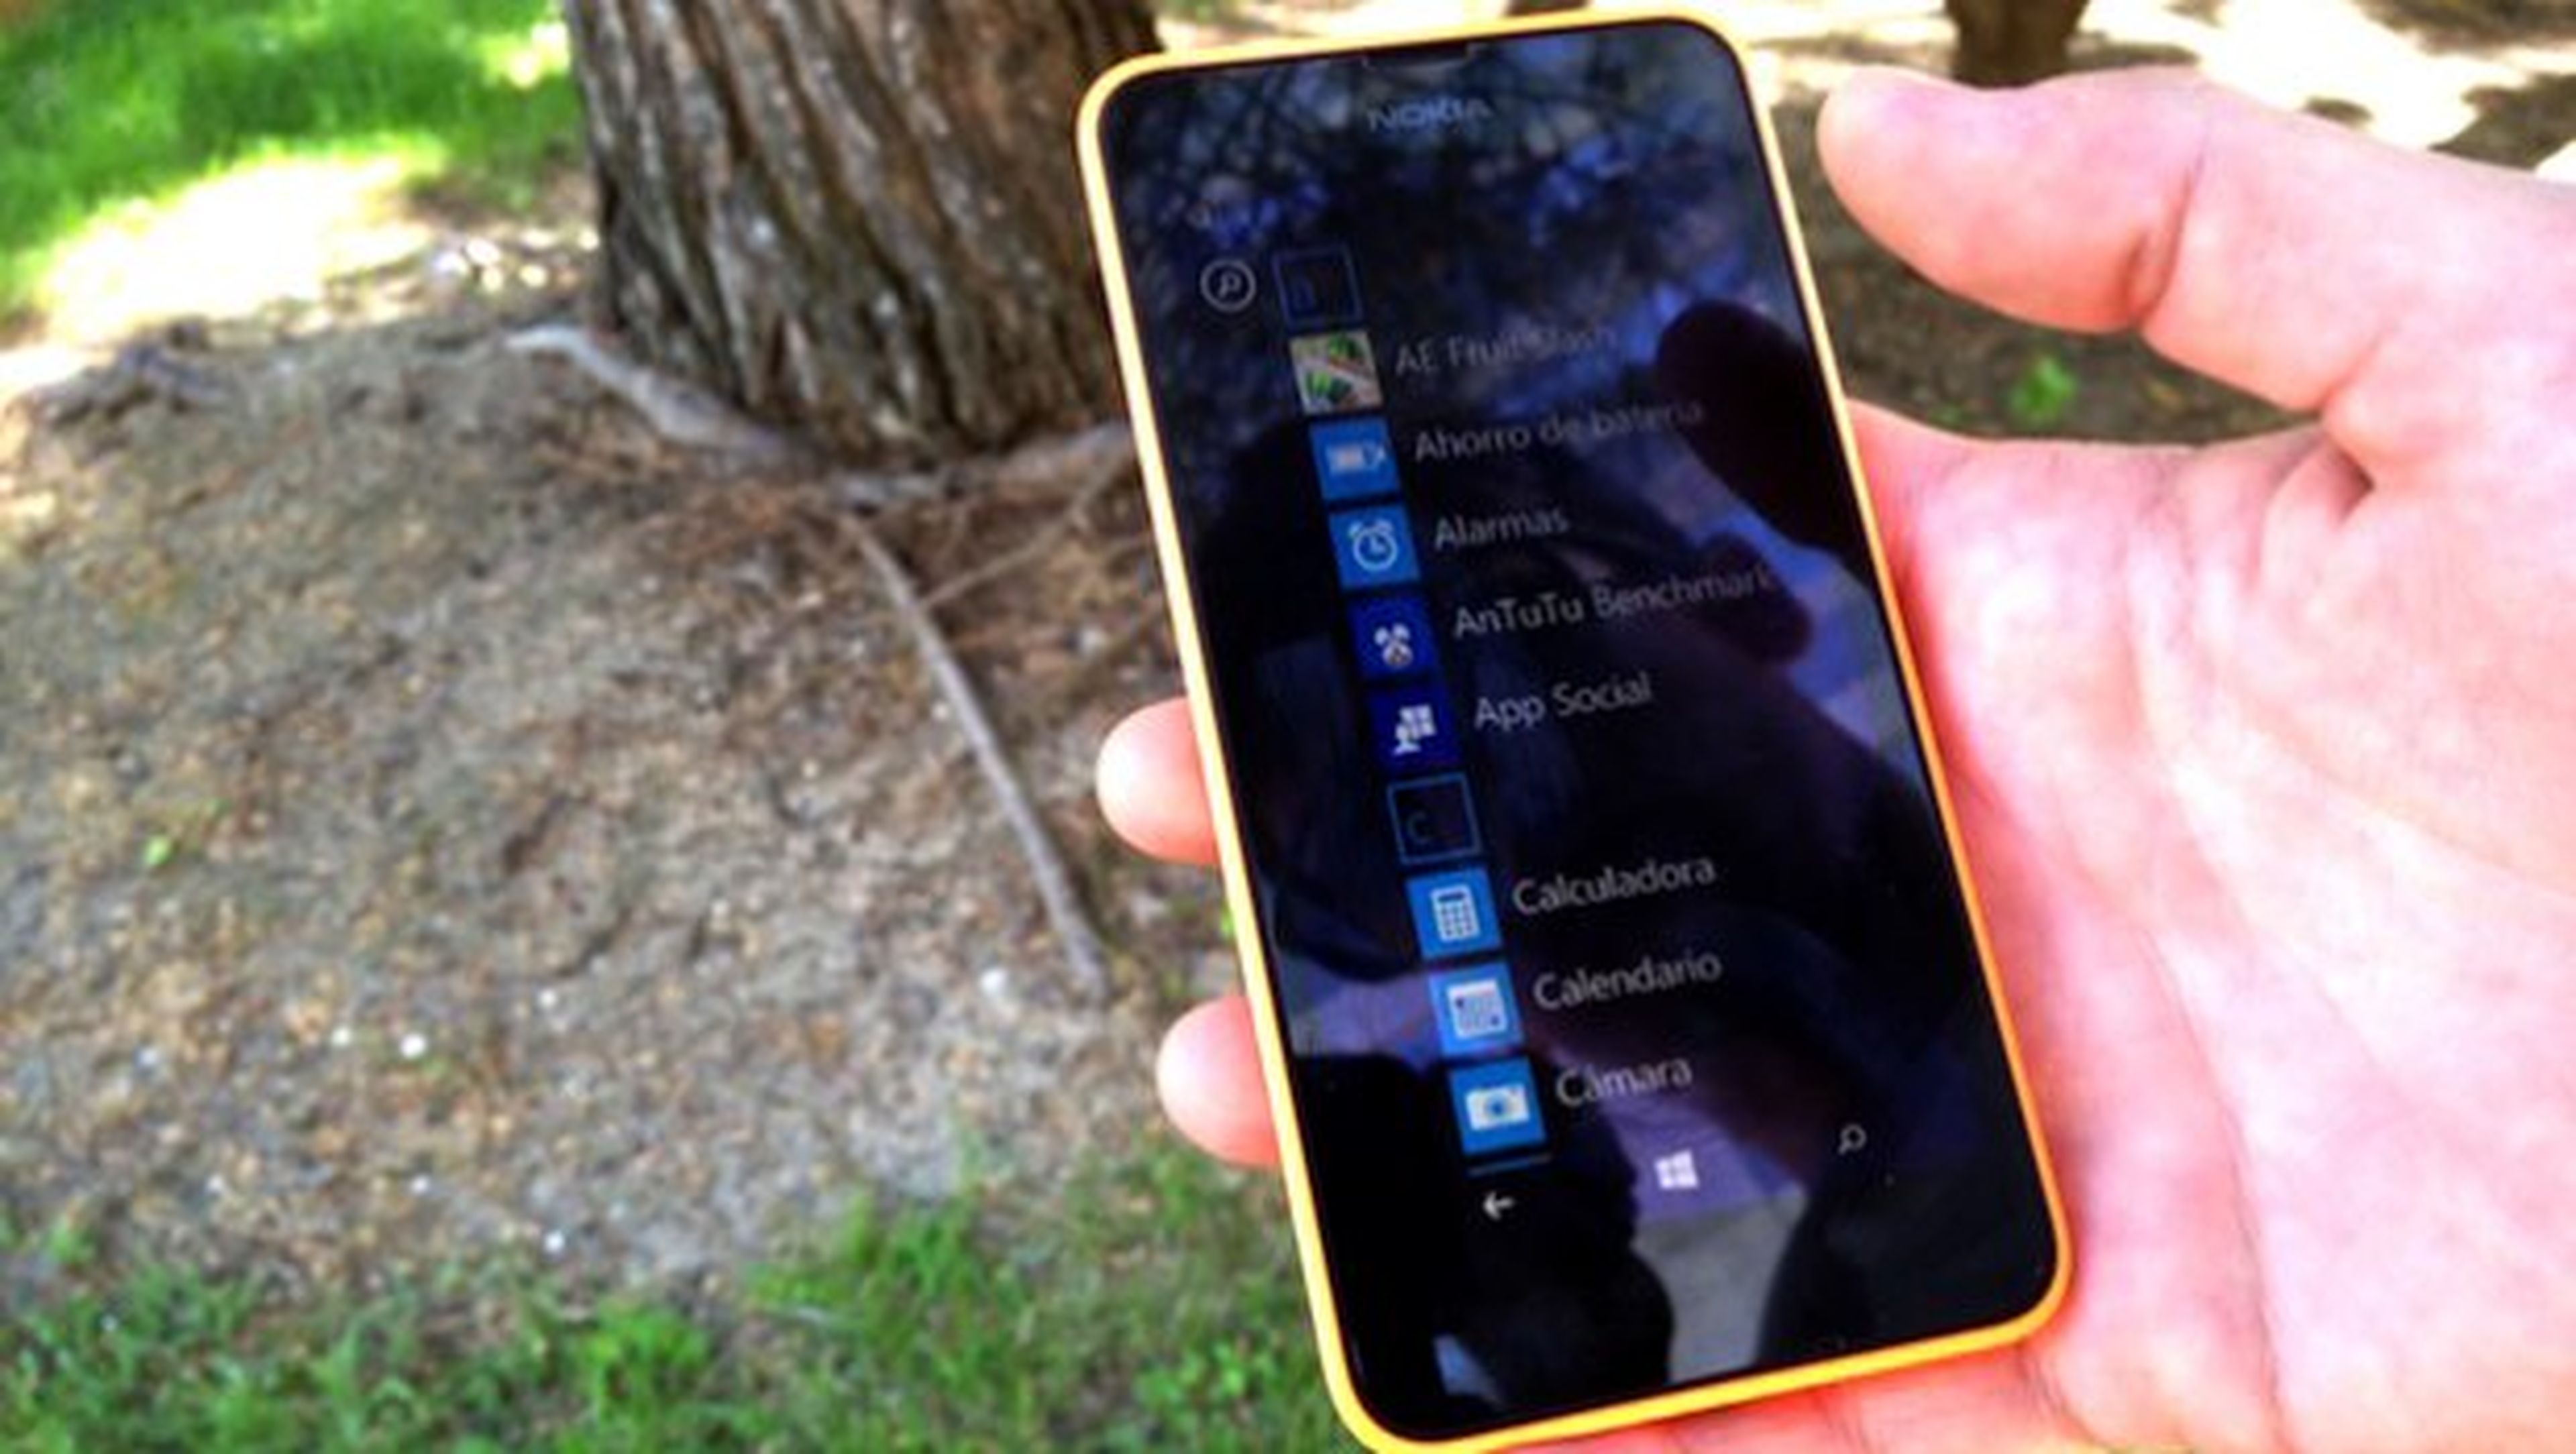 Nokia Lumia 630: análisis del low-cost con Windows Phone 8.1